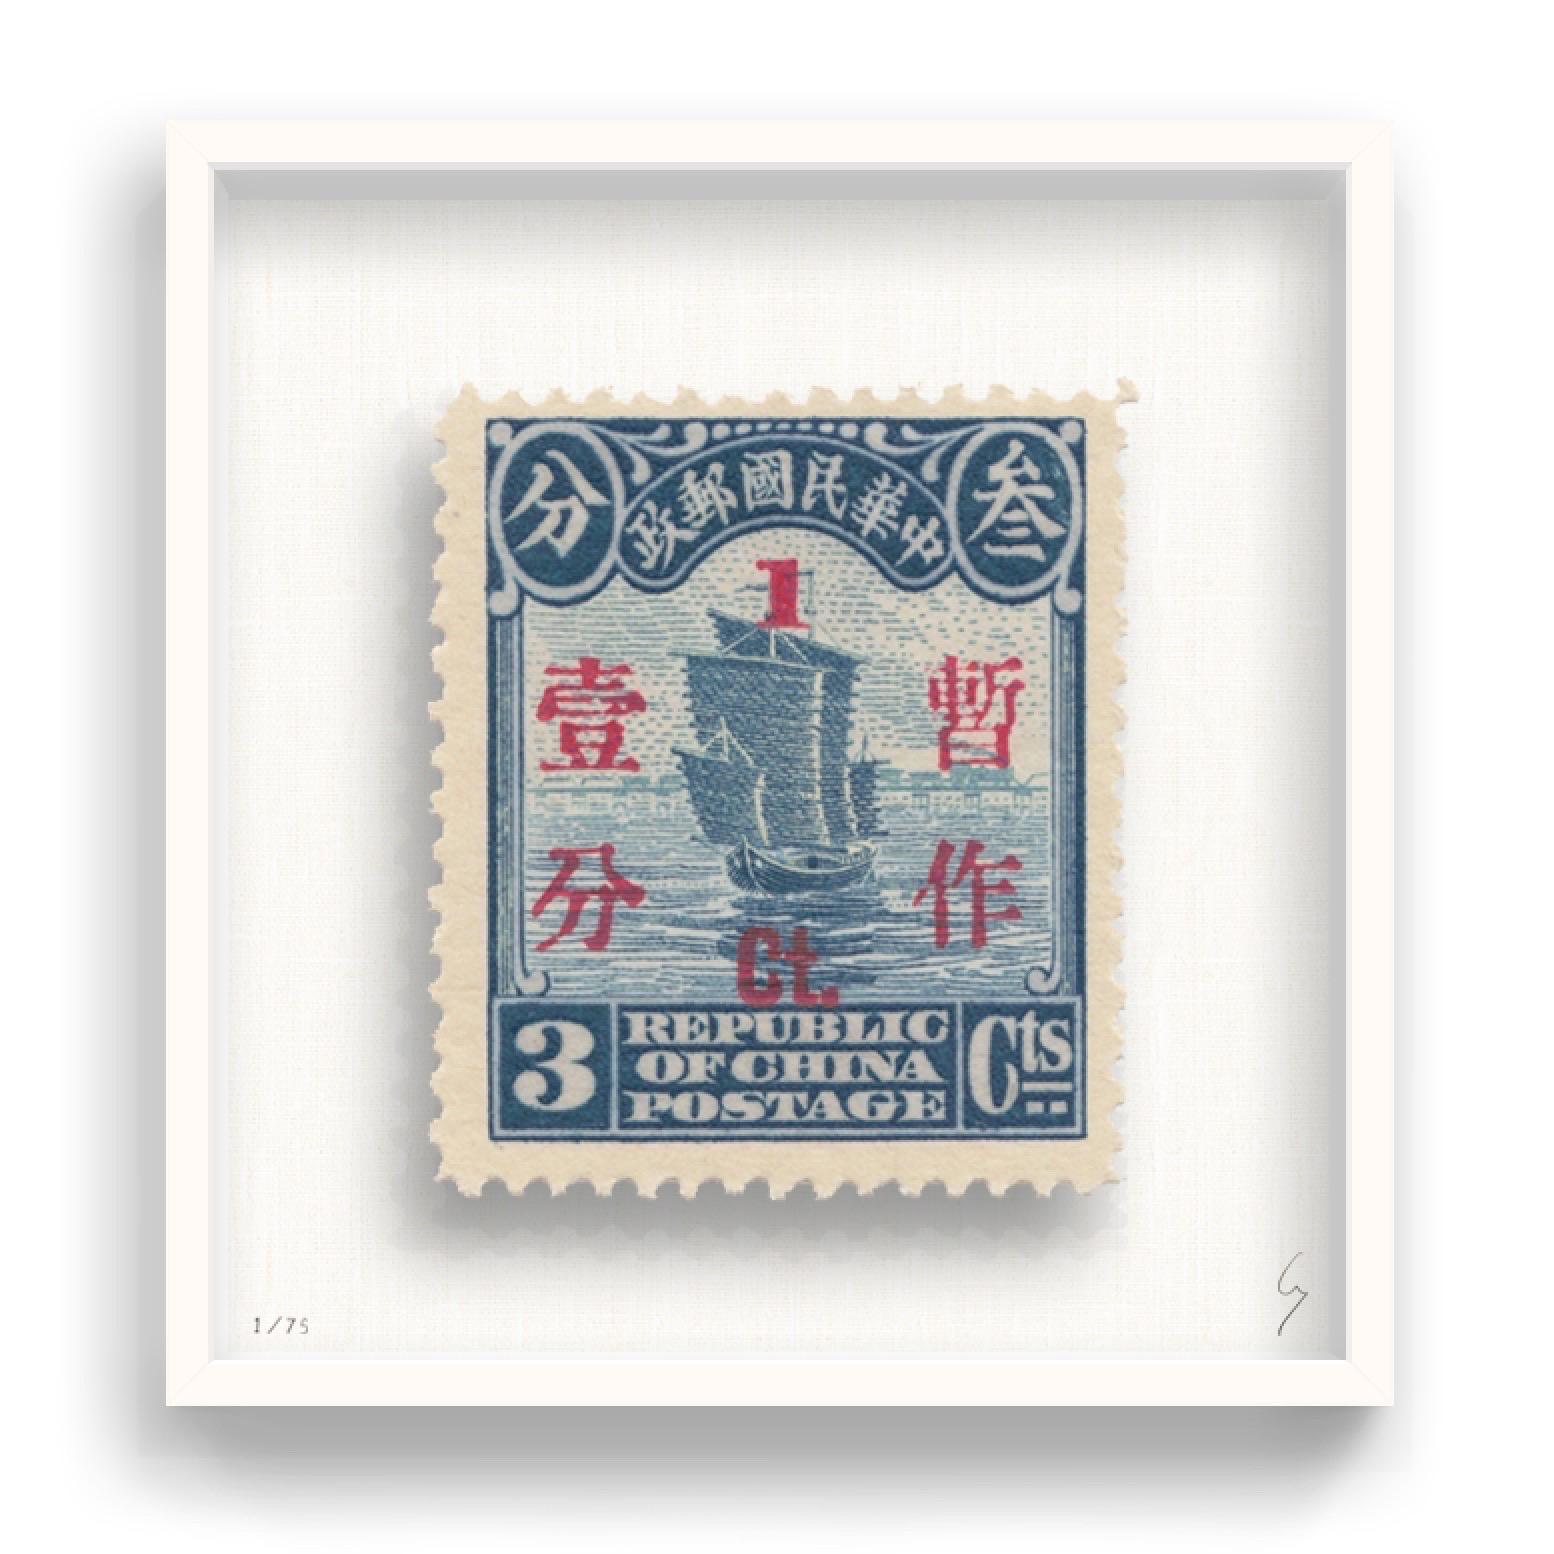 Guy Gee, China (mittelgroß)

Handgravur auf 350gsm auf G.F Smith Karton
53 x 56cm (20 4/5 x 22 2/5 in)
Inklusive Rahmen 
Auflage von 75 

Jedes Kunstwerk von Guy wurde auf der Grundlage einer Originalbriefmarke digital nachgebildet. Das von Hand